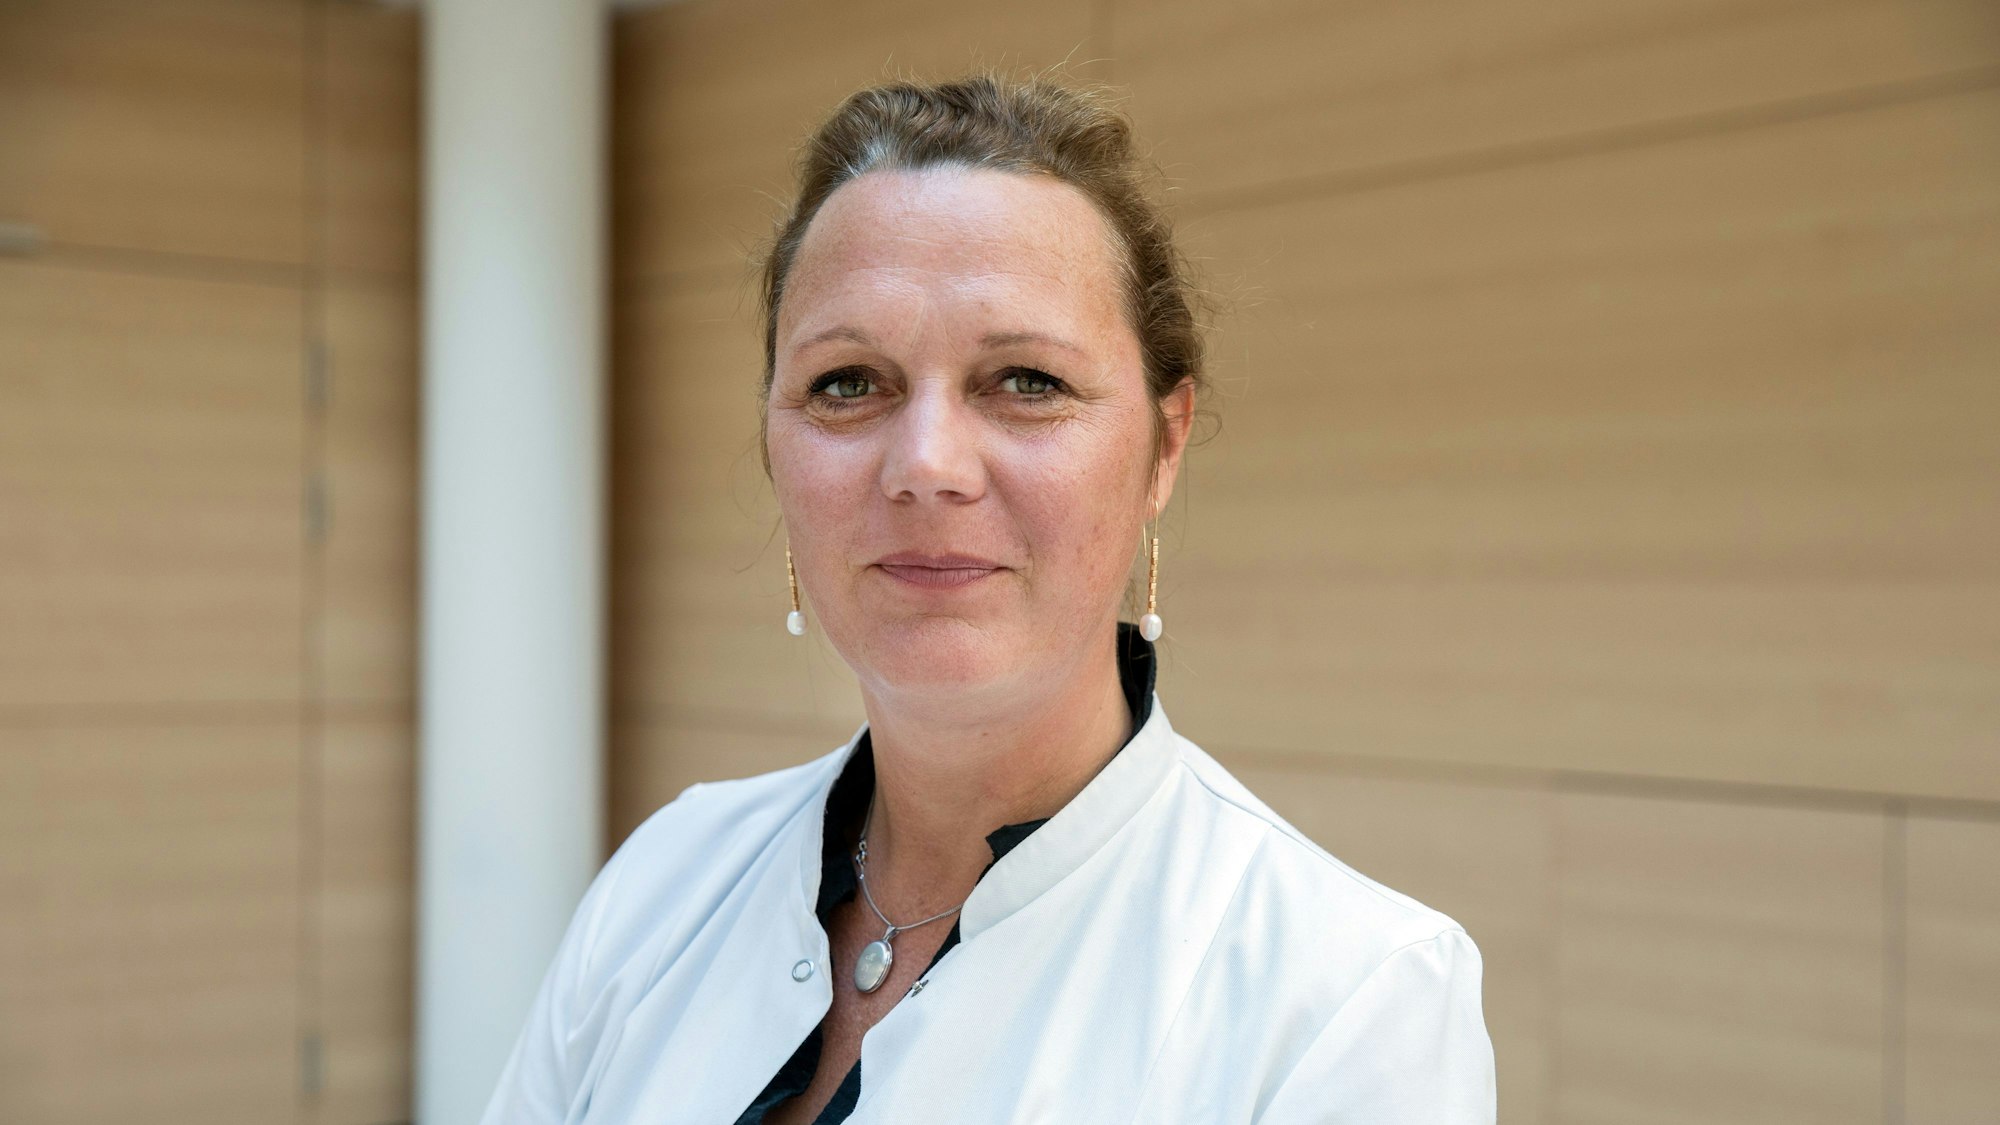 Clara Lehmann ist Leiterin der Infektiologischen Ambulanz der Uniklinik Köln.

